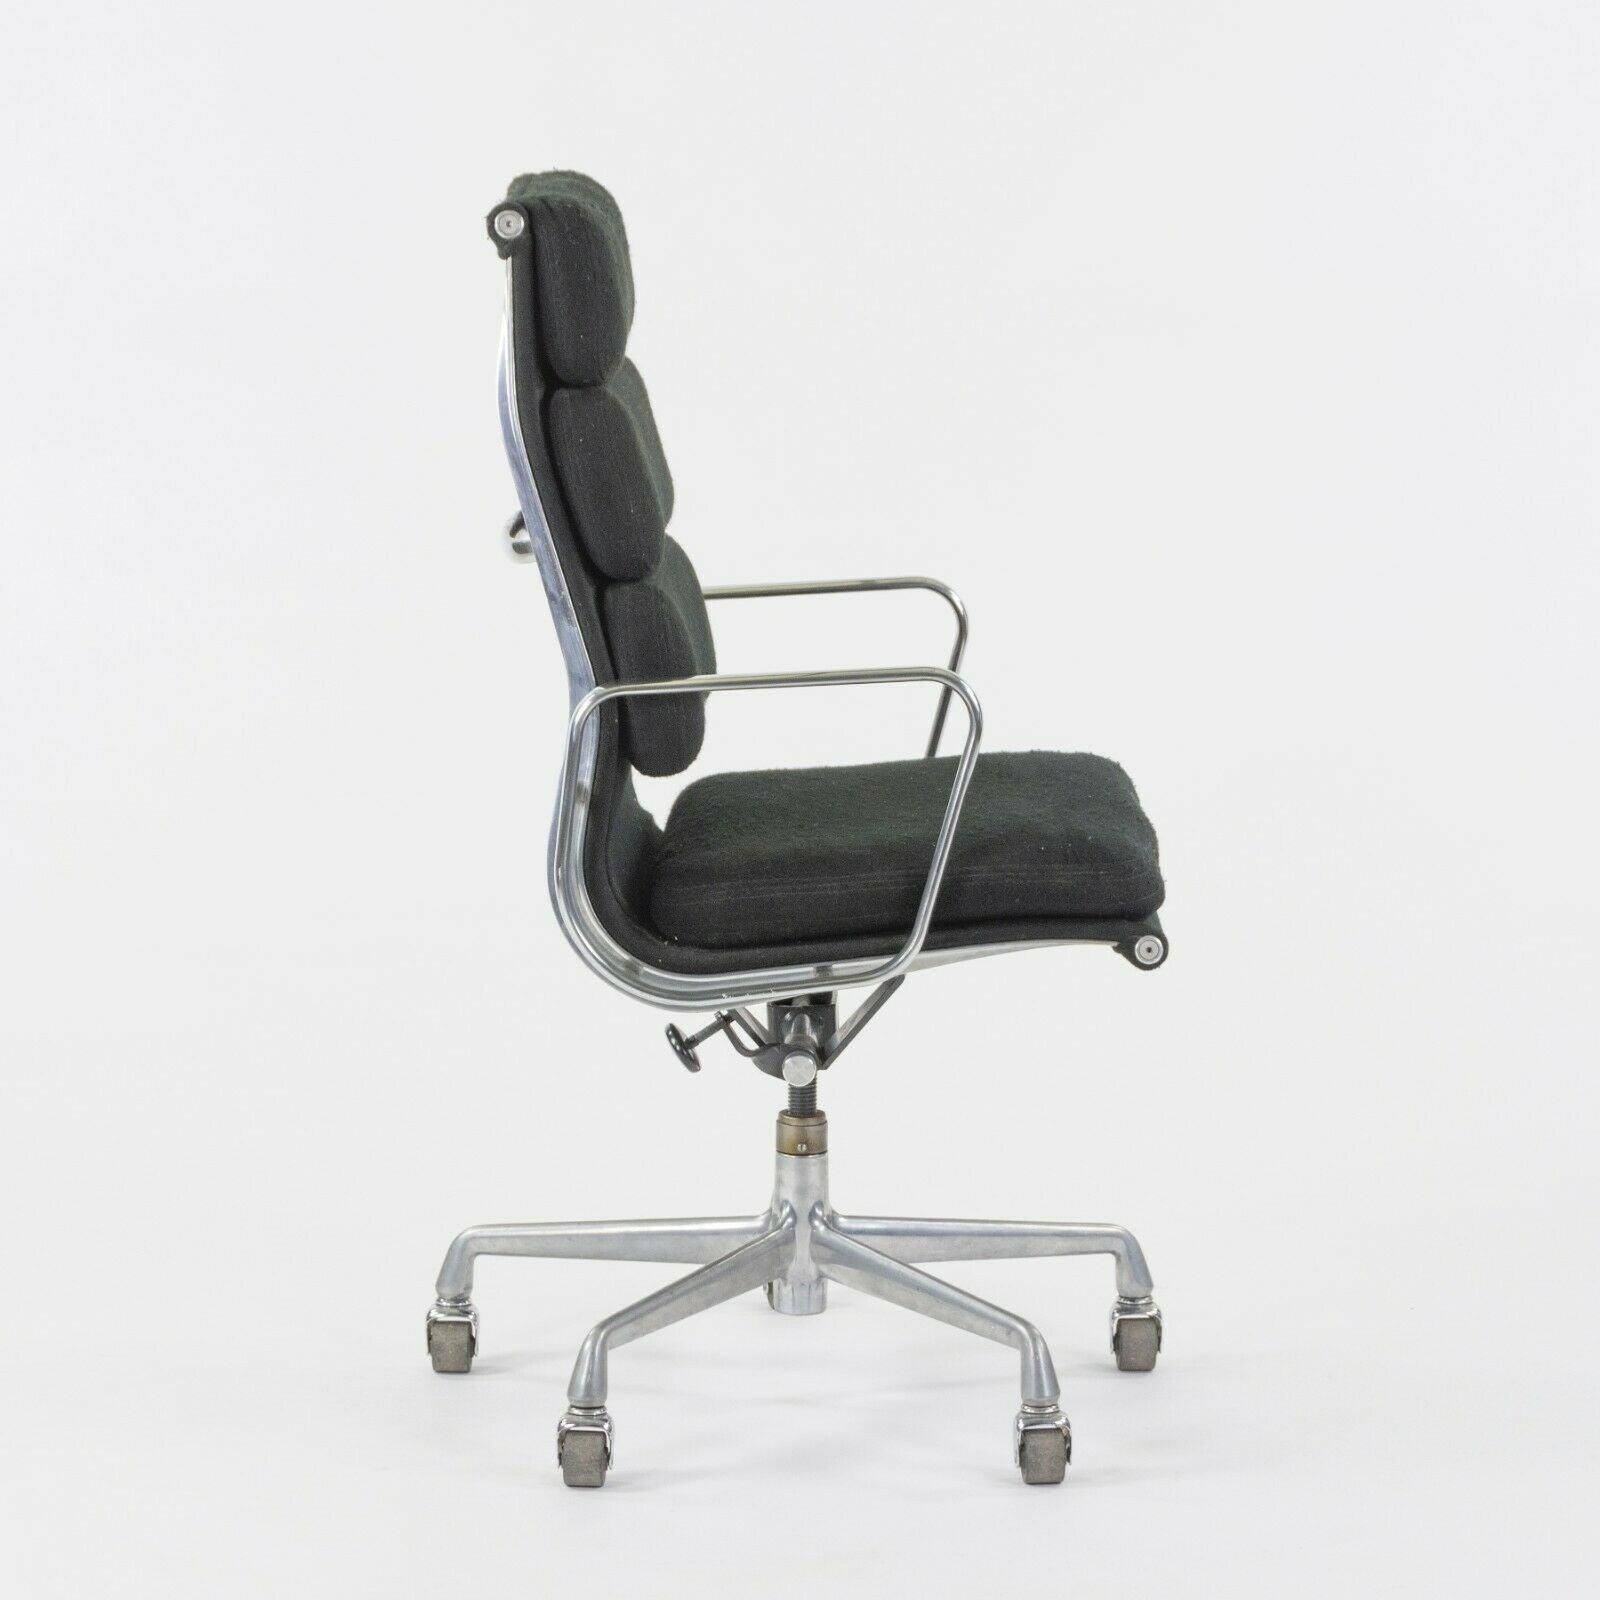 Nous vous proposons à la vente une chaise de bureau vintage Herman Miller Eames Aluminum Group. Il s'agit d'un exemplaire rare, qui a été produit dans les années 1980 et qui a été spécialement commandé avec une sellerie en tissu noir. Beaucoup de